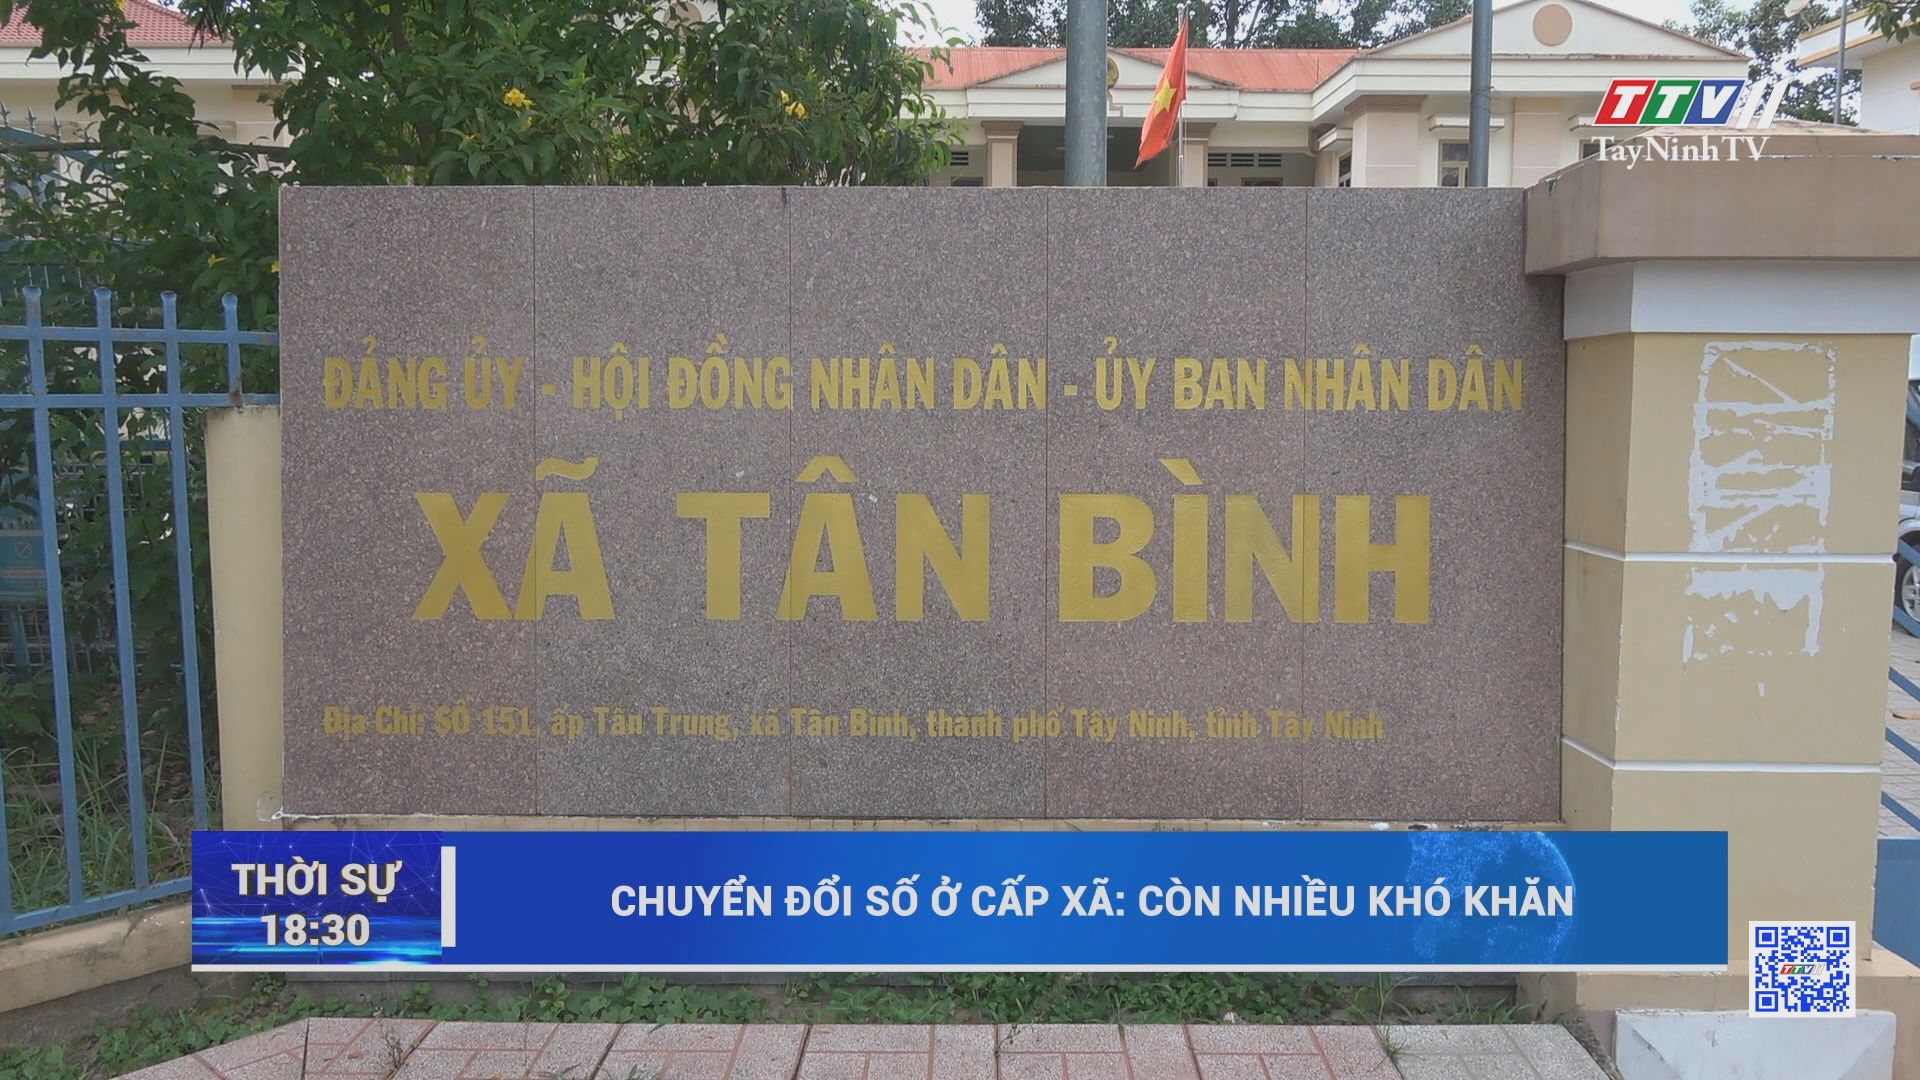 Tây Ninh tập trung thúc đẩy chuyển đổi số | CHUYỂN ĐỔI SỐ | TayNinhTV